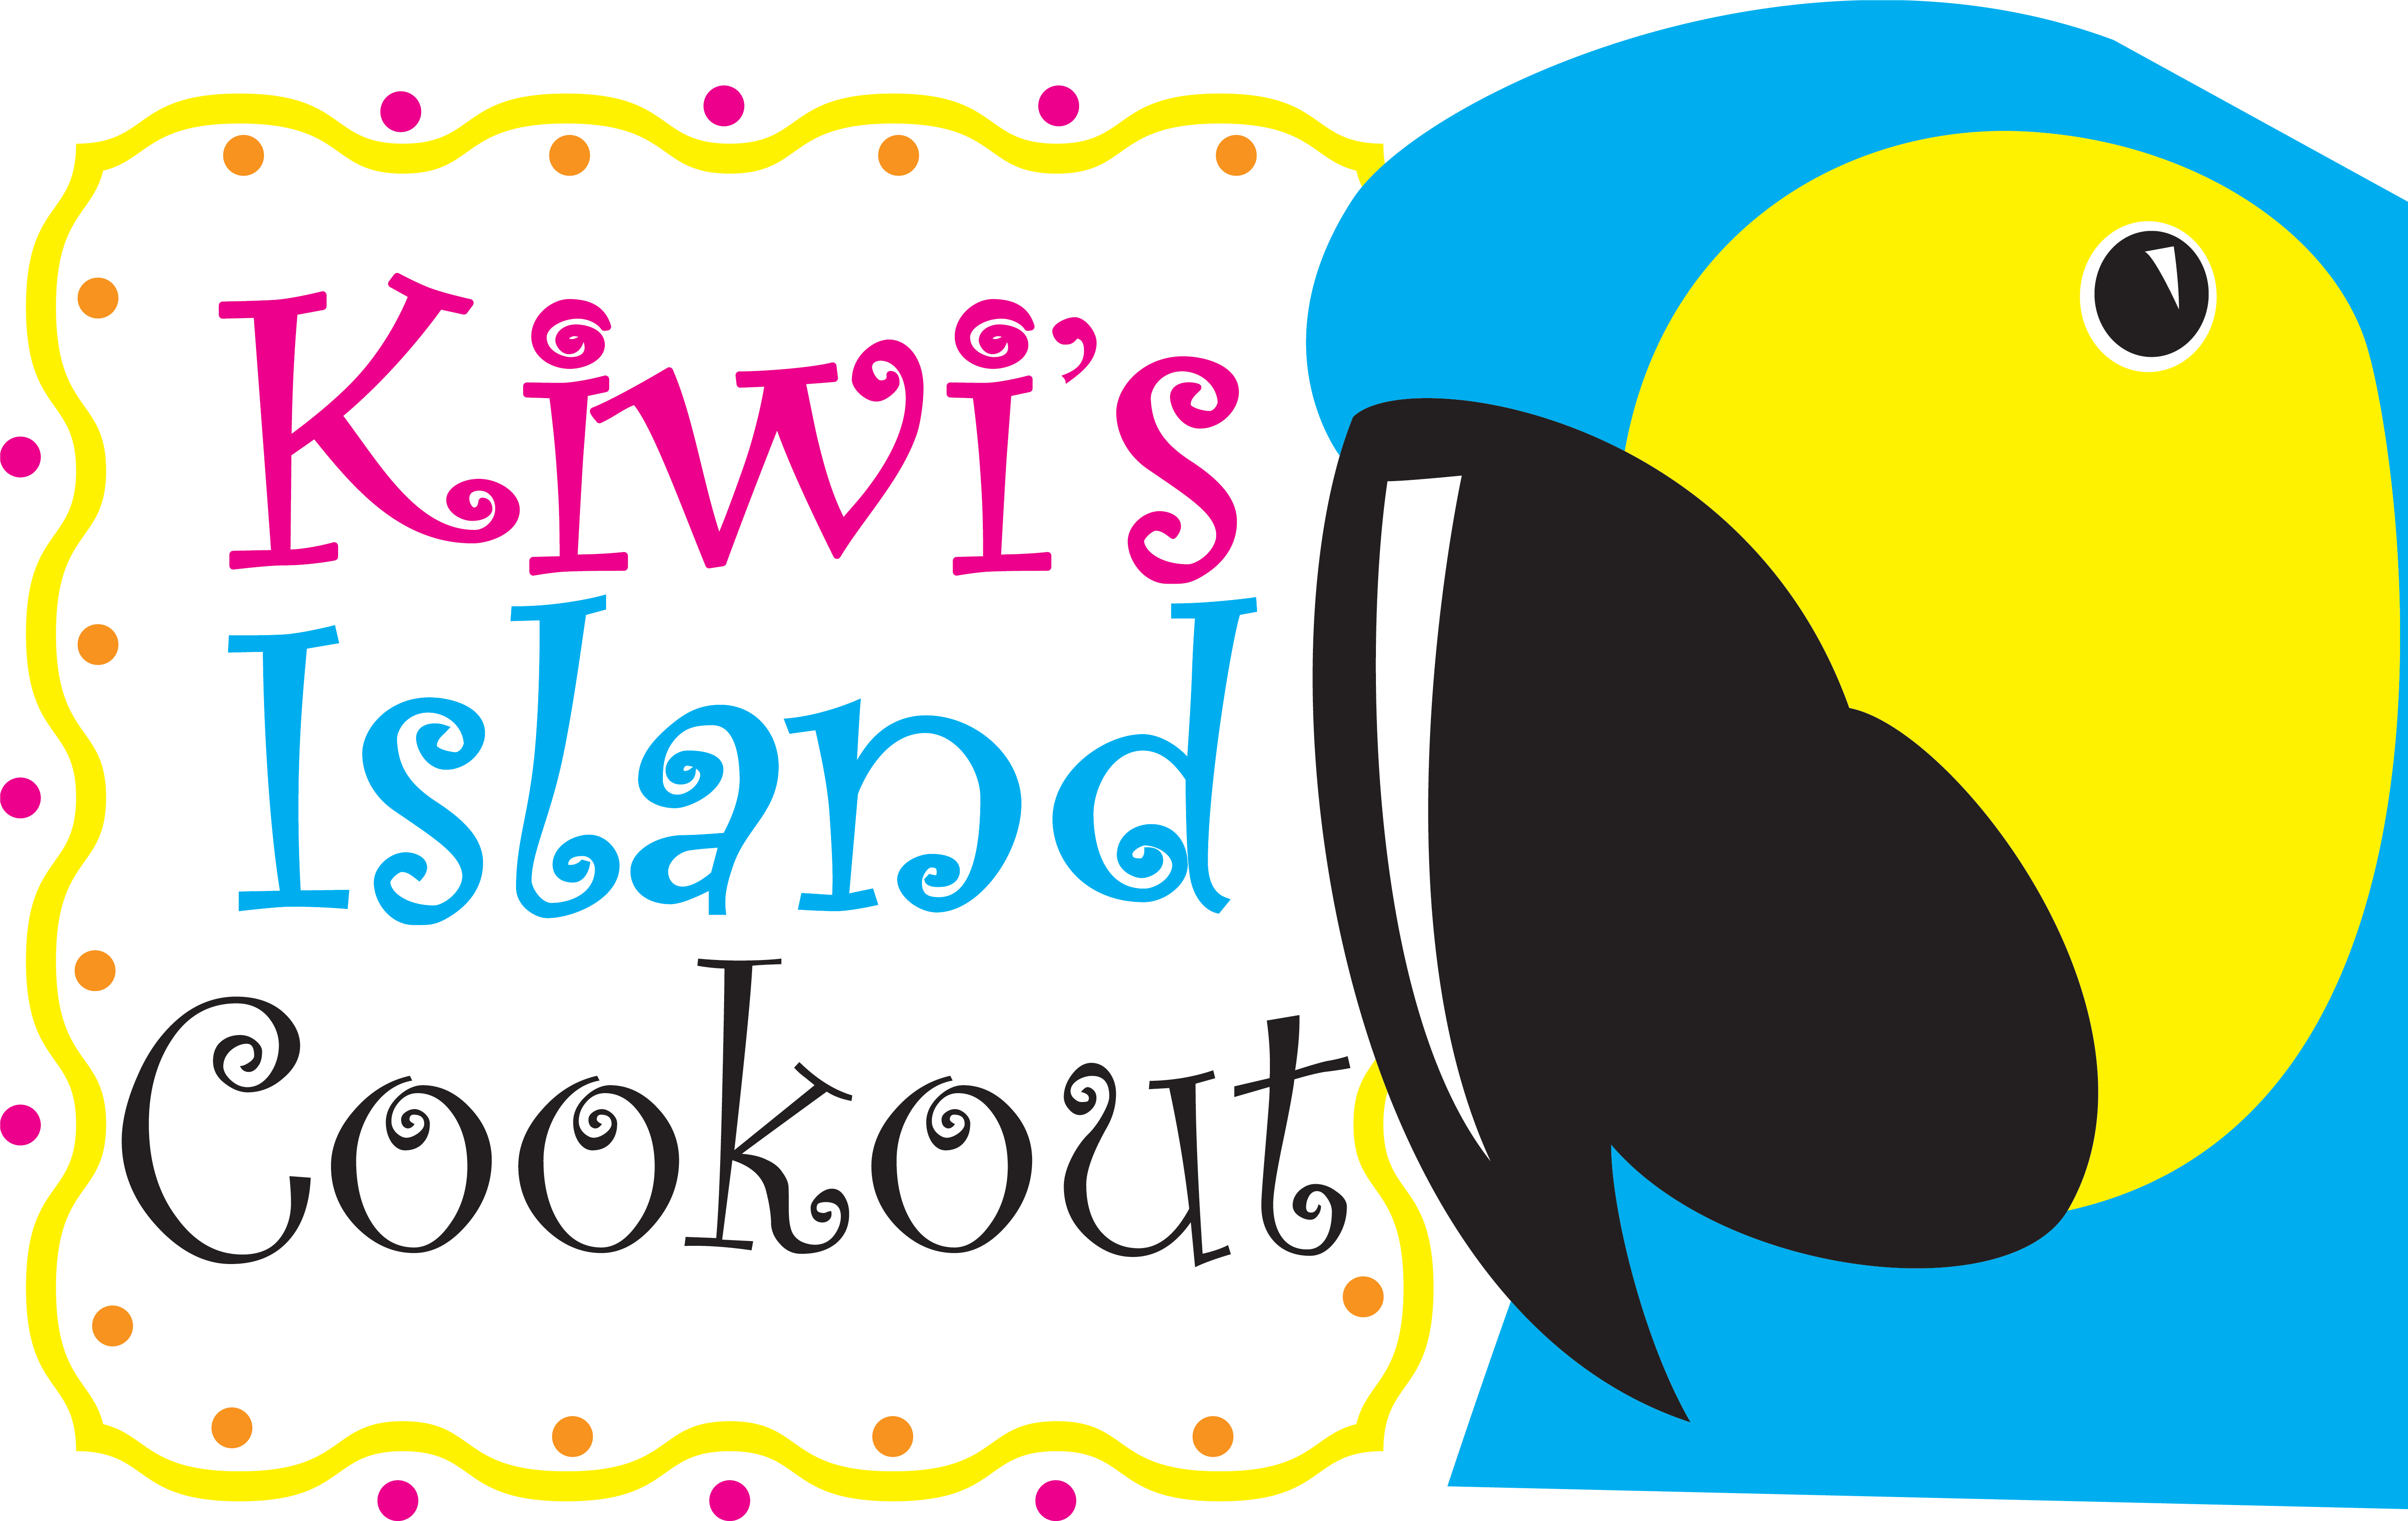 Kiwi-logo - - Kiwi's Island Cookout (5427x3427)